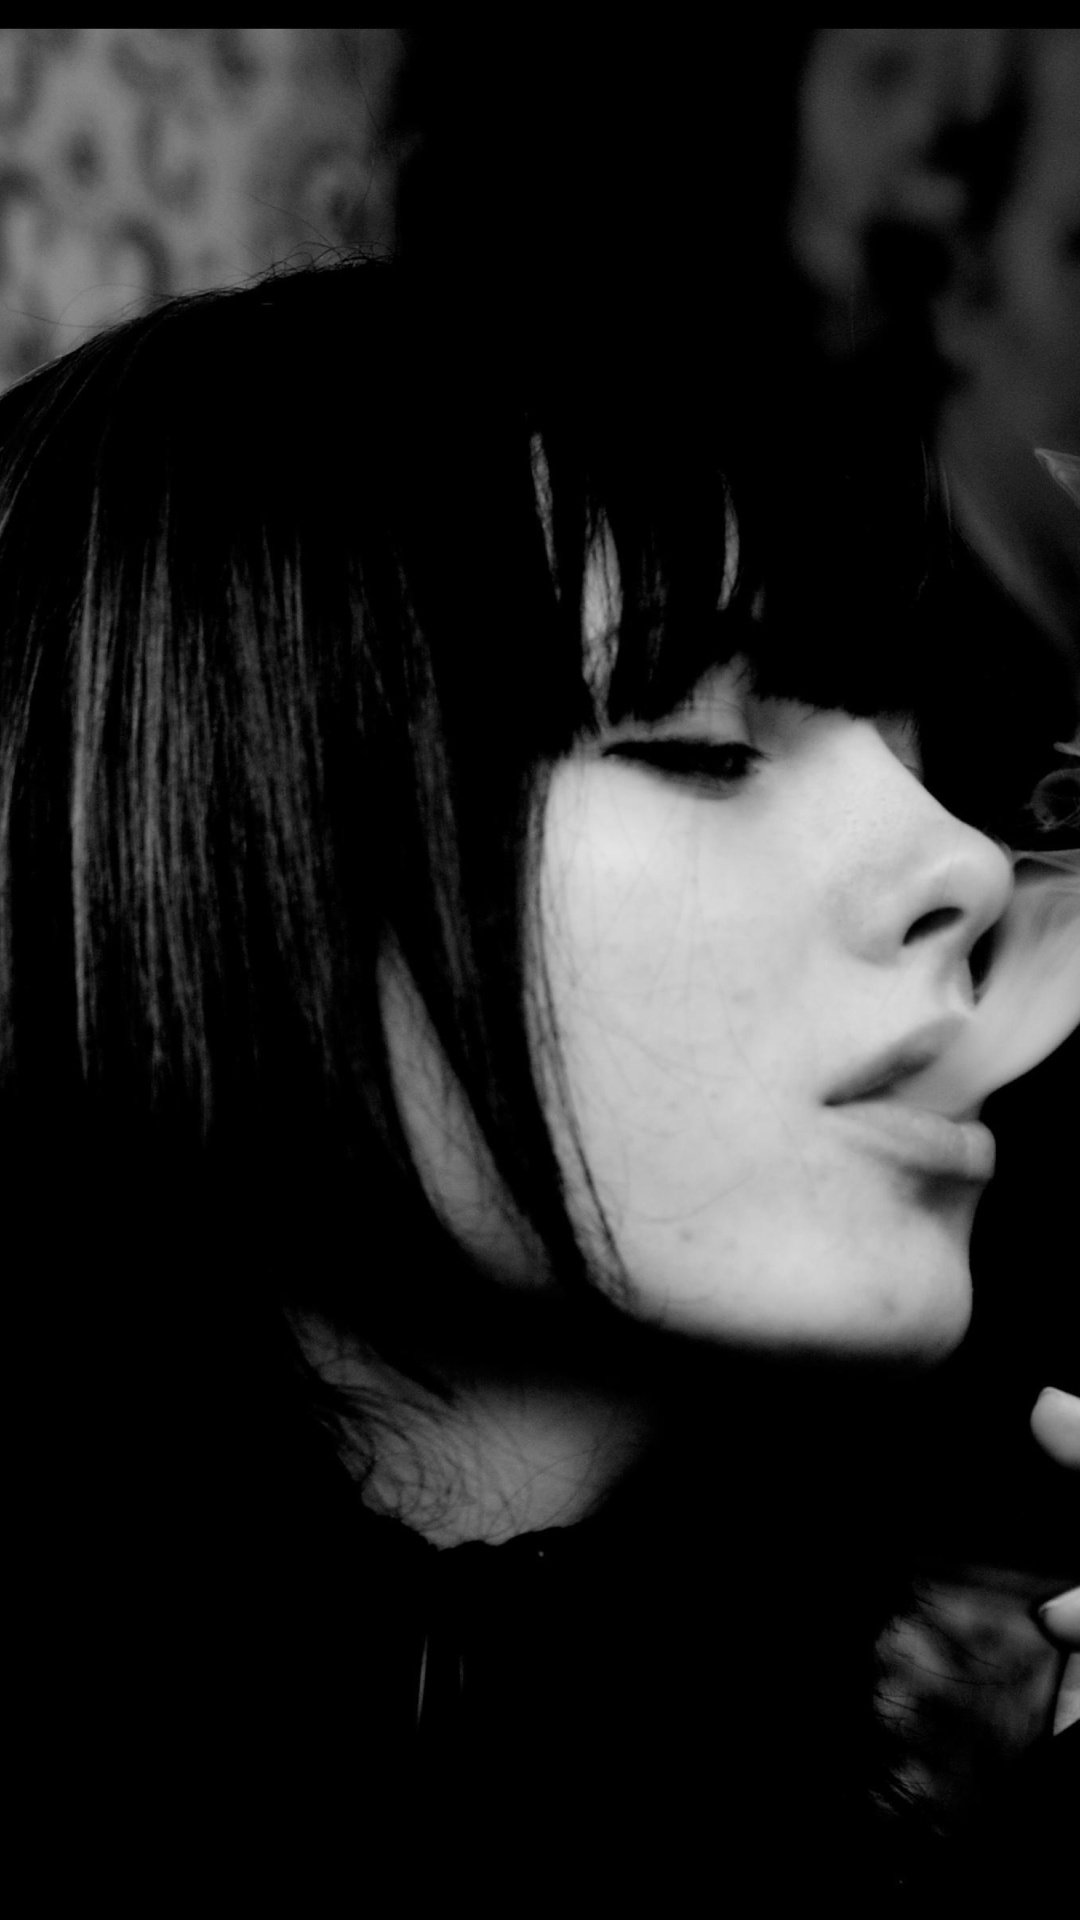 Das Black and white photo smoking girl Wallpaper 1080x1920